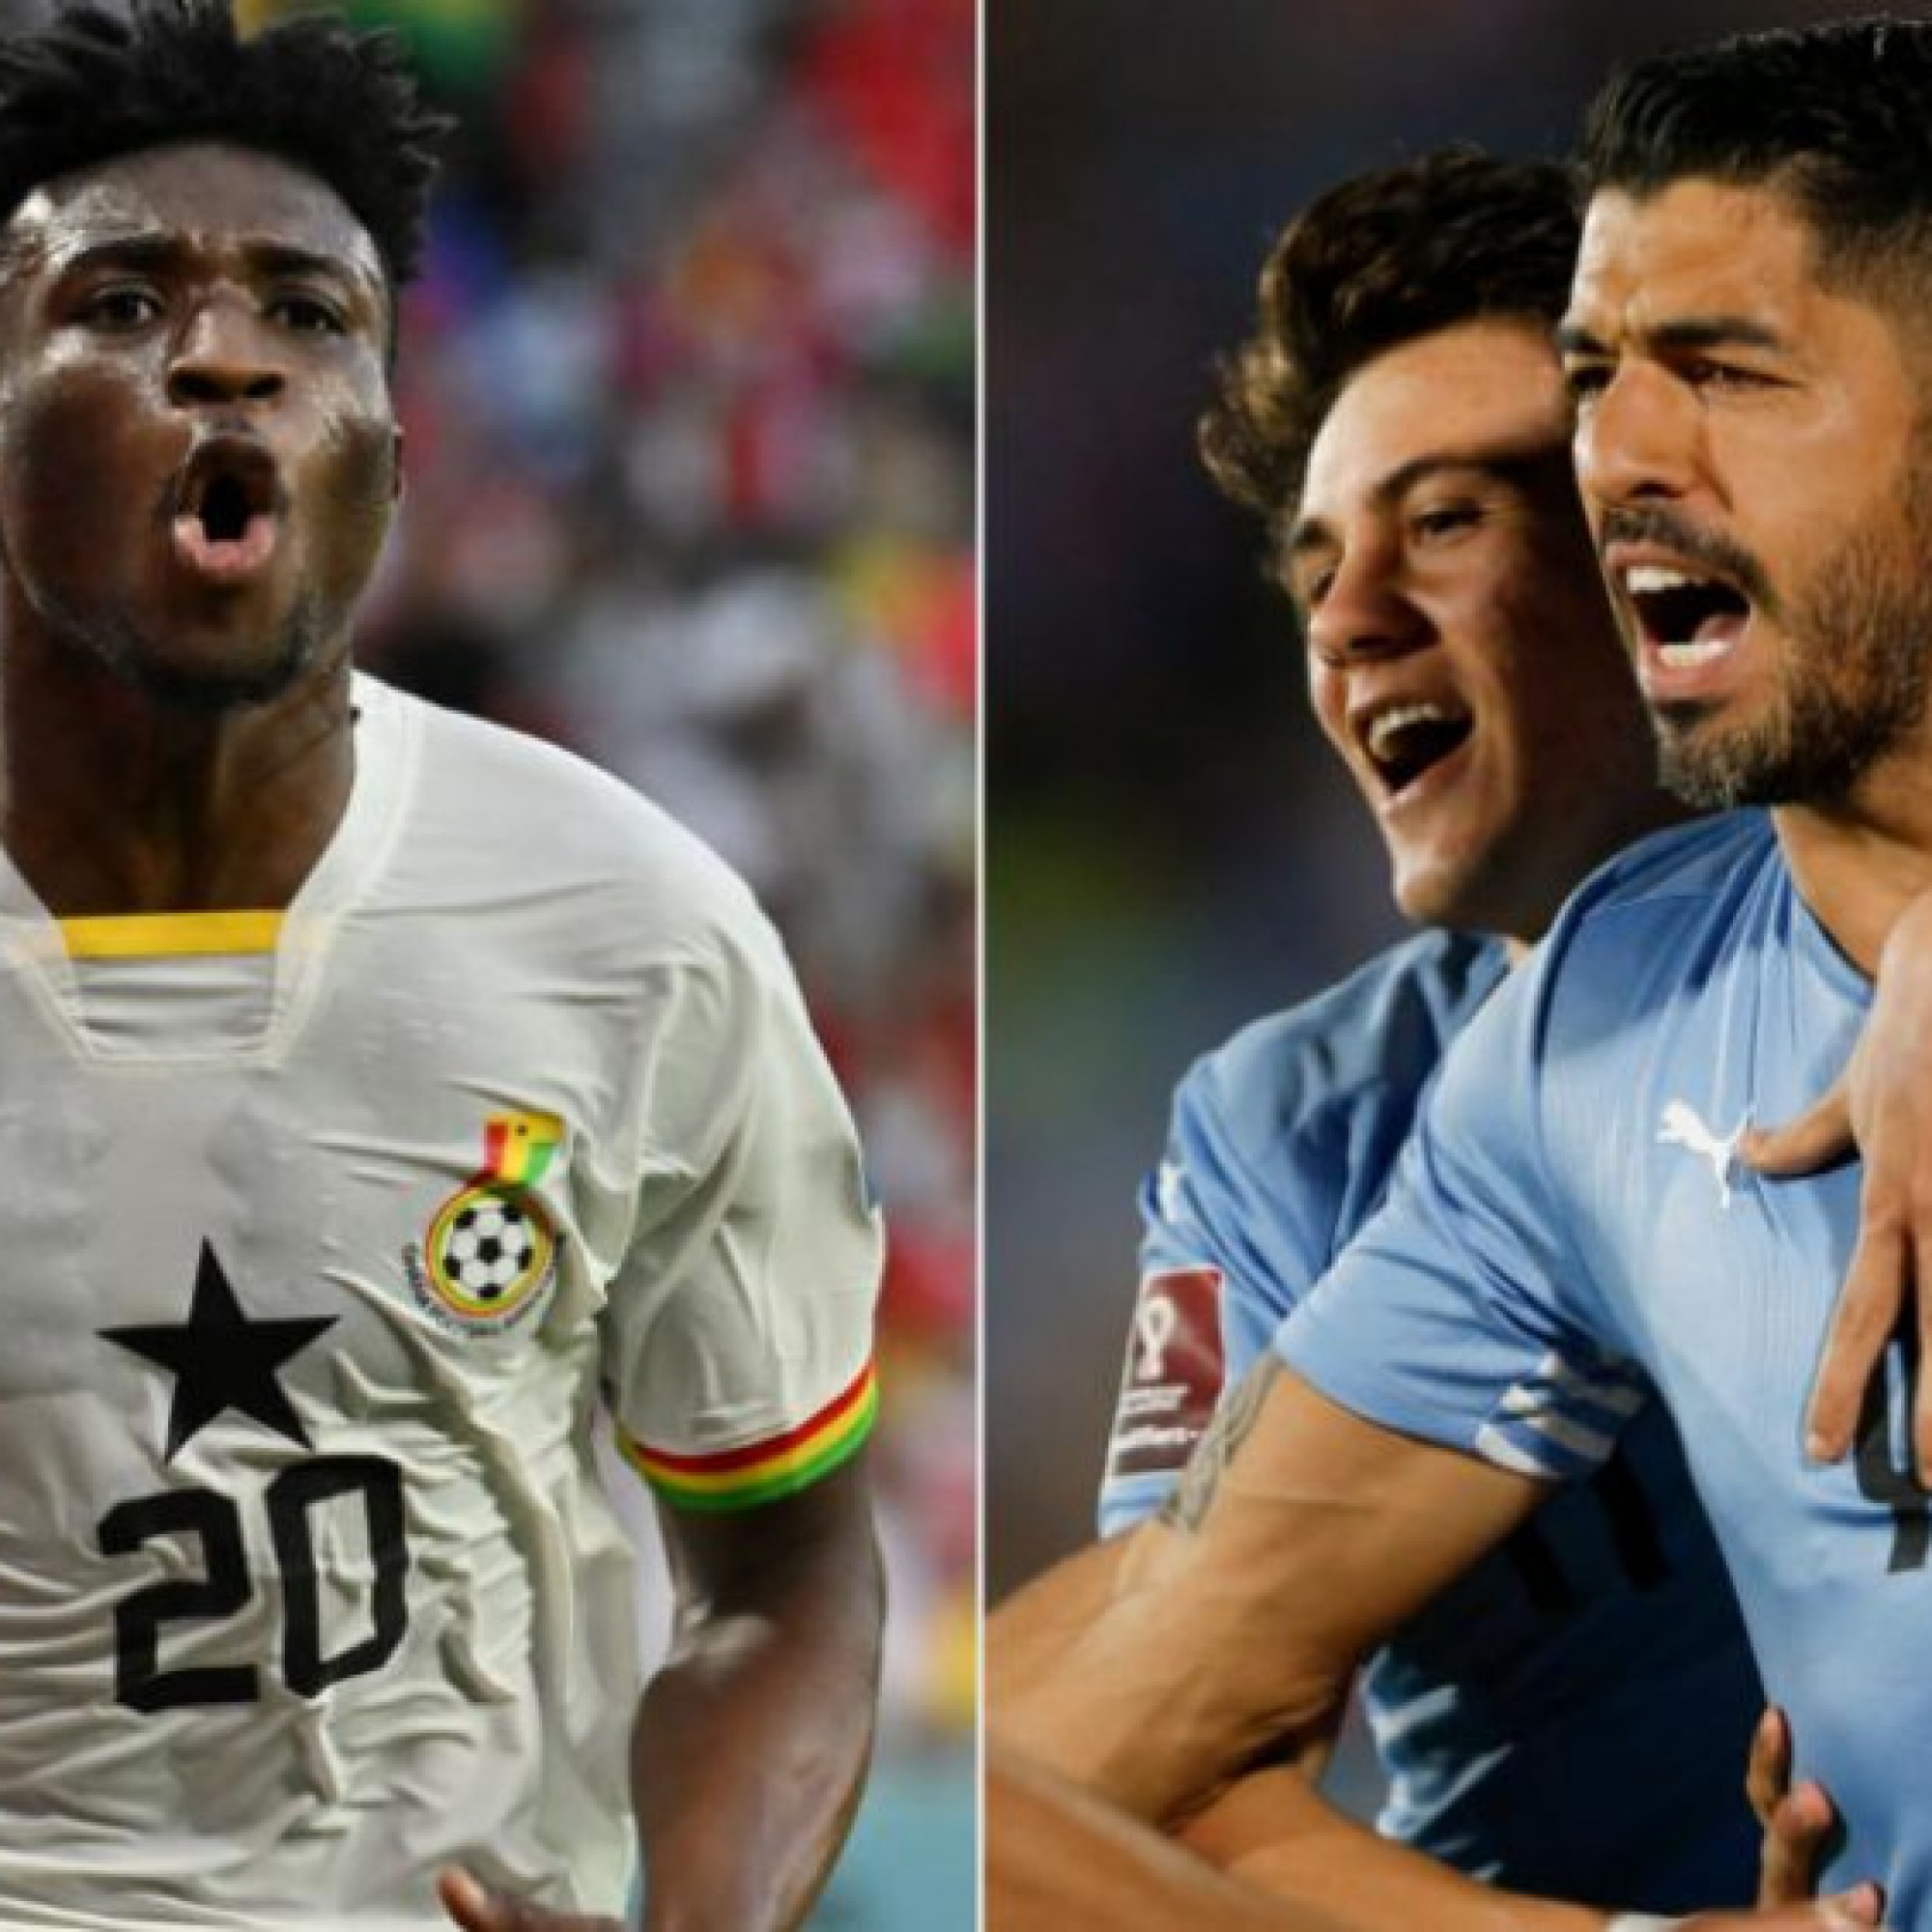  - Trực tiếp bóng đá Ghana - Uruguay: Suarez đá cặp Nunez, Cavani dự bị (World Cup)